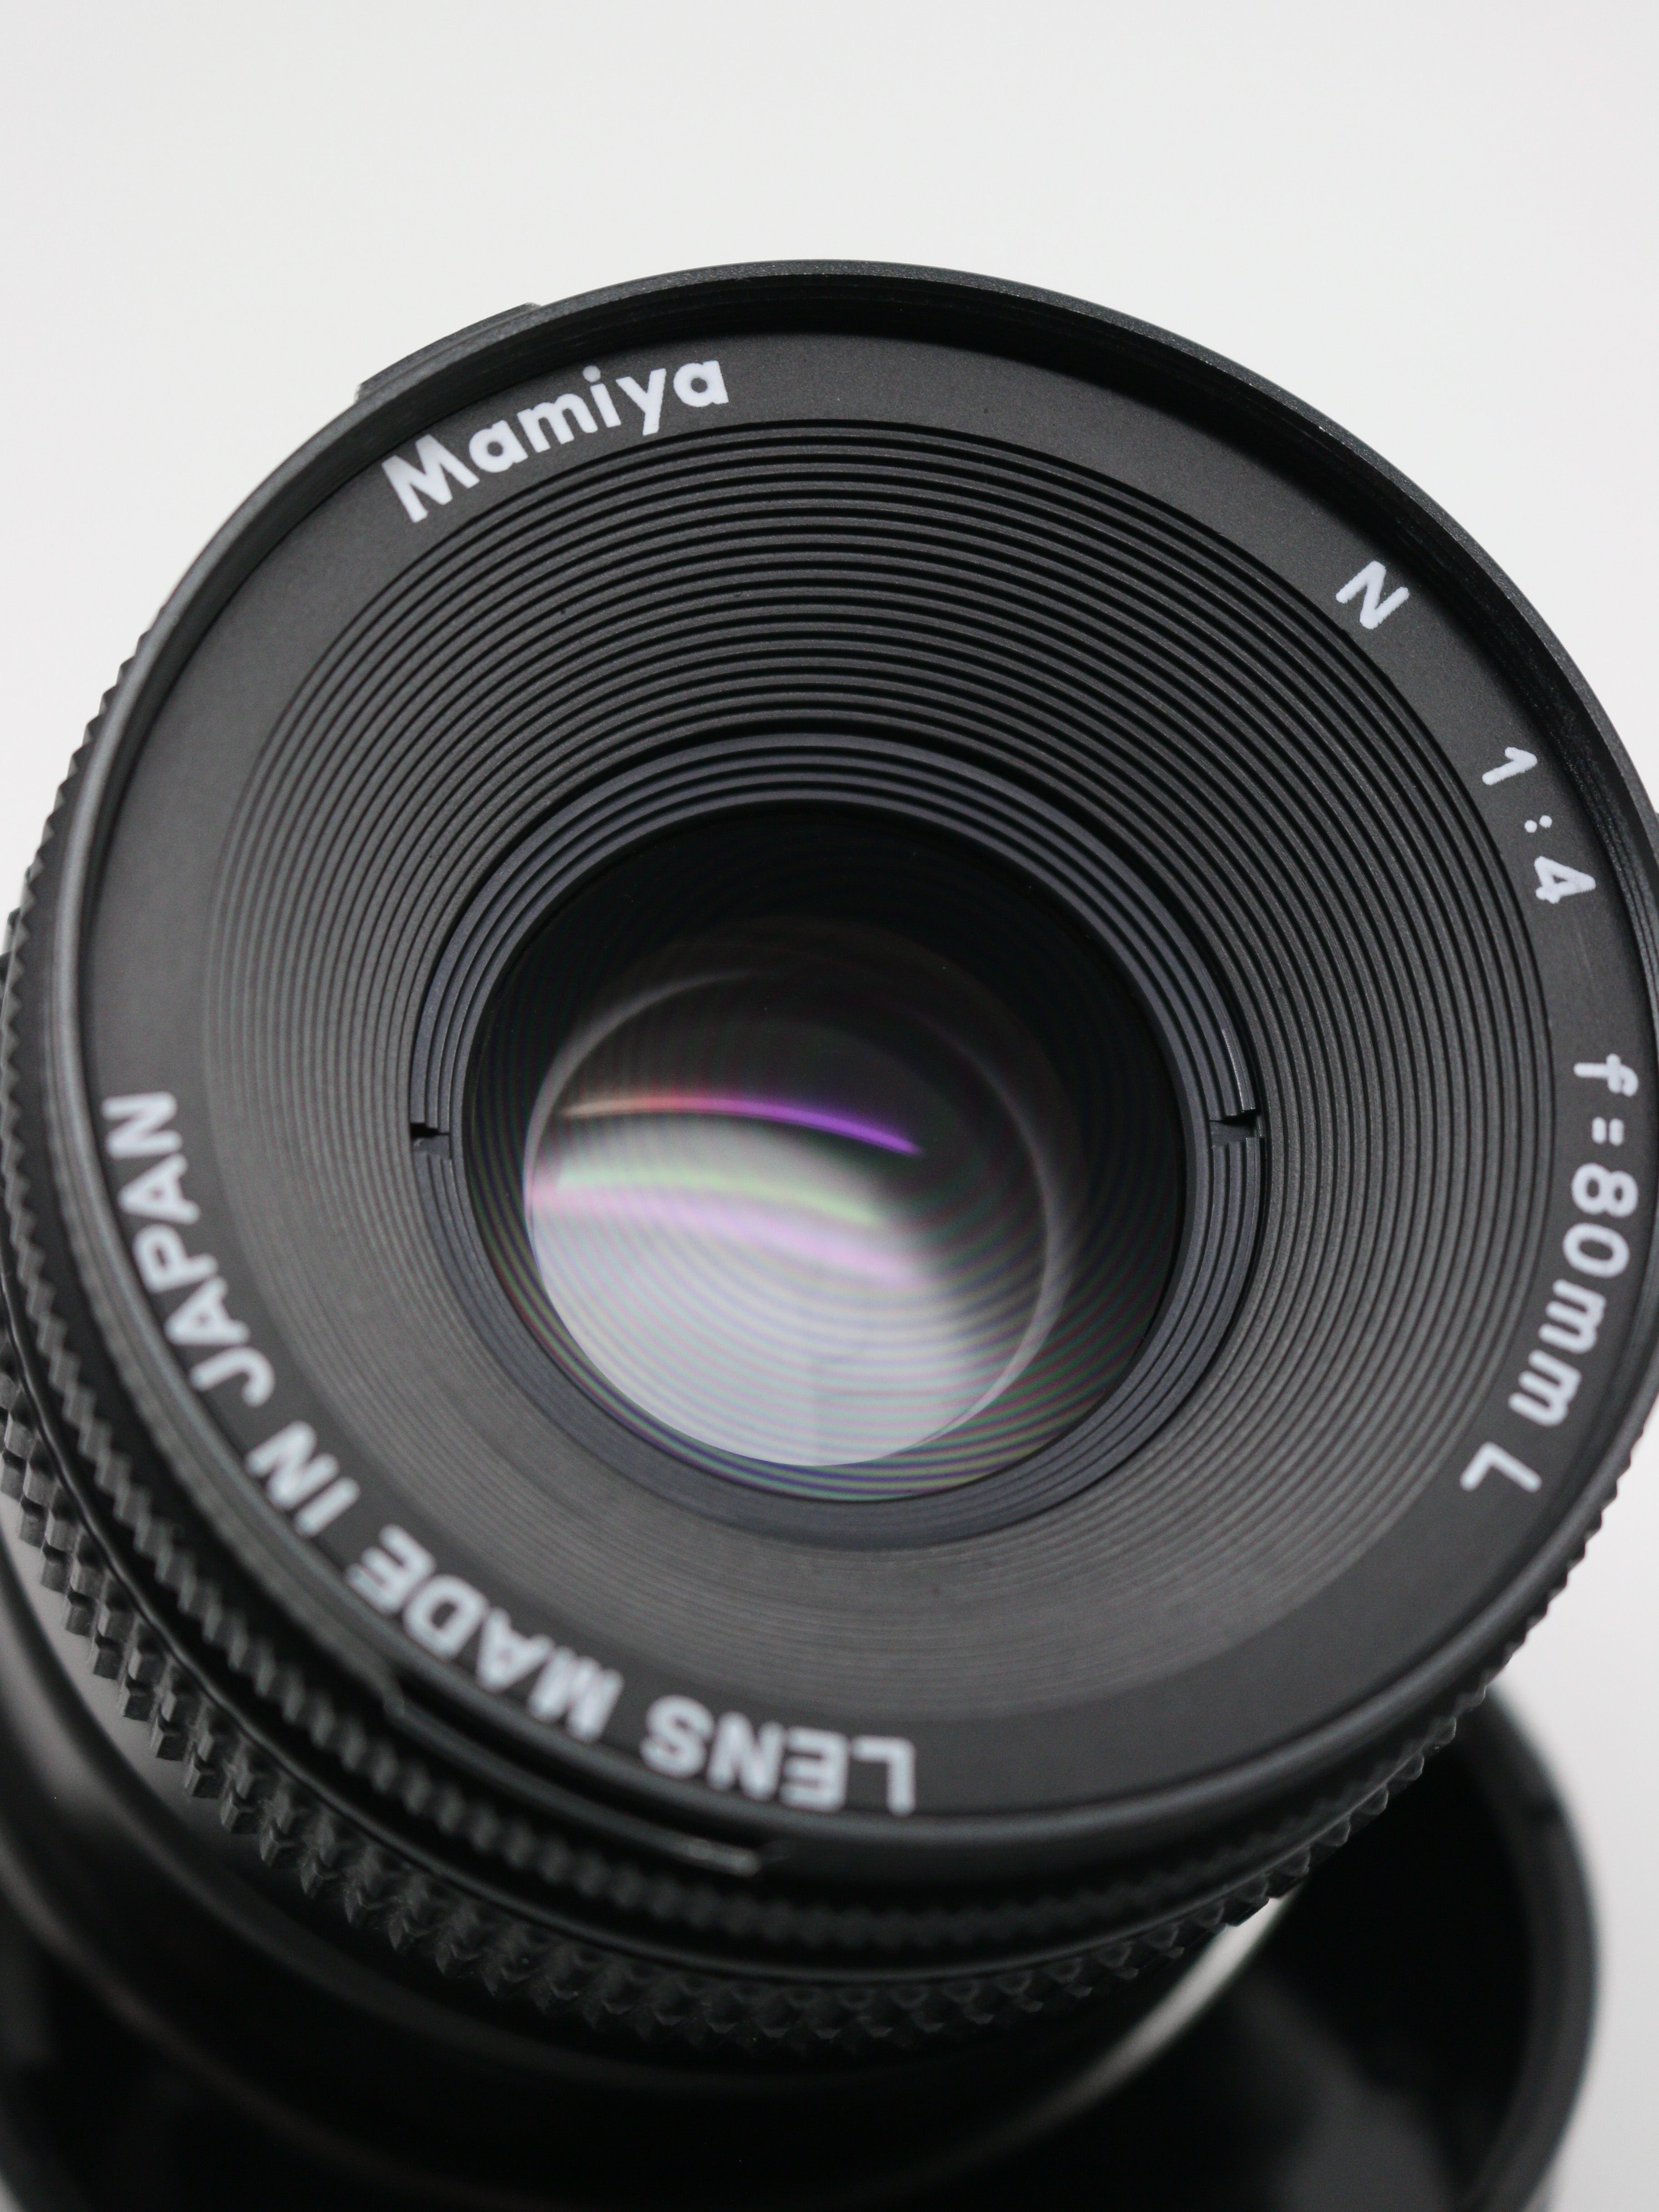 Mamiya N 80mm f/4 Lens